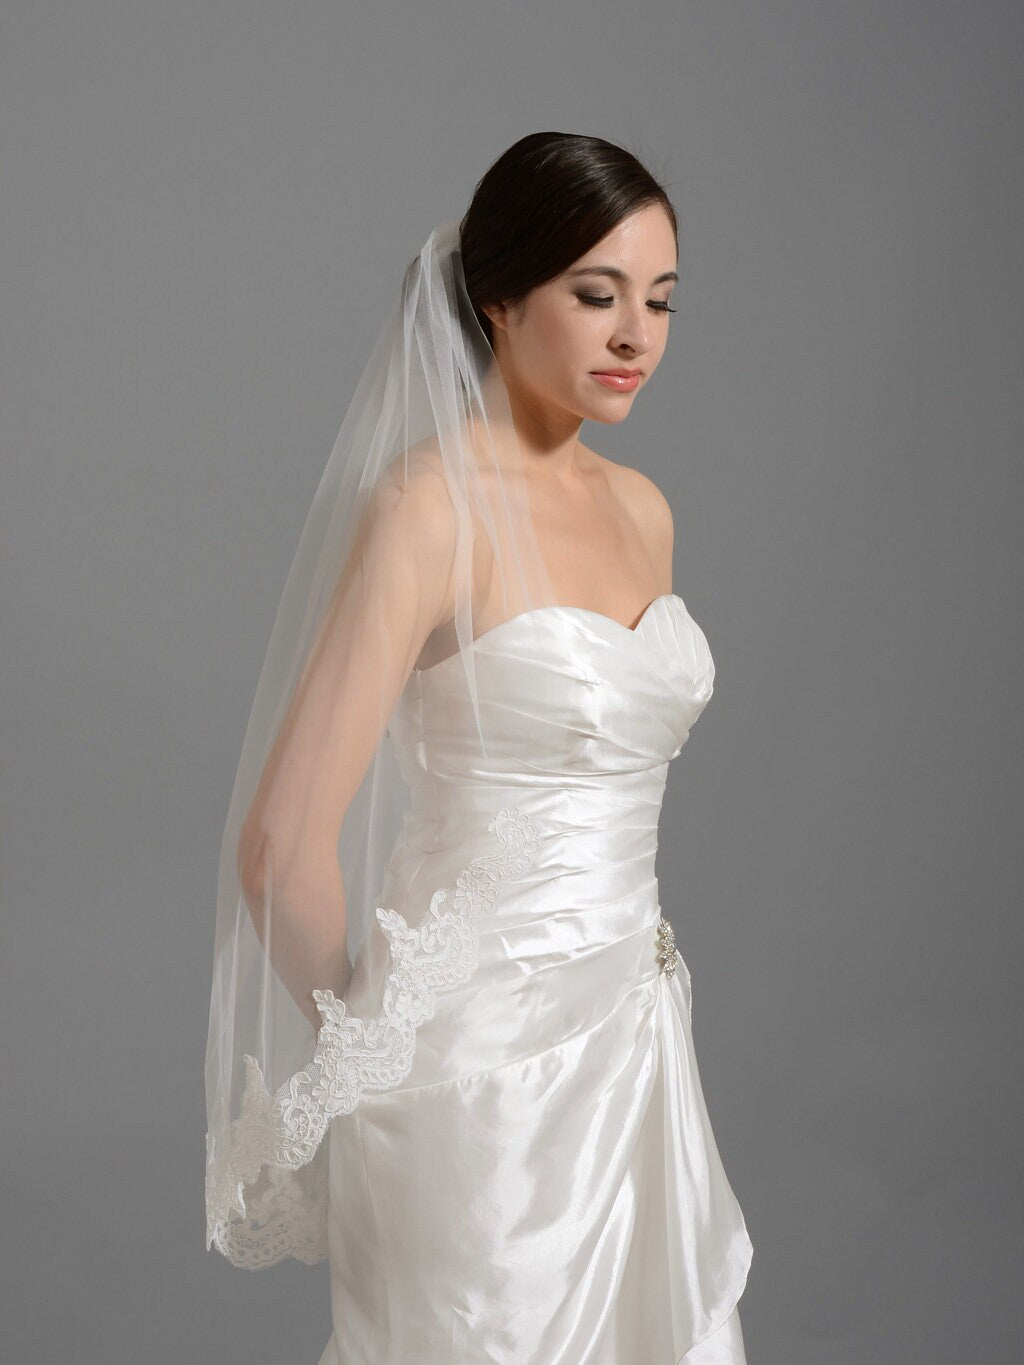 wedding veil, bridal veil, mantilla veil, fingertip length veil, alencon lace veil, wedding veil ivory